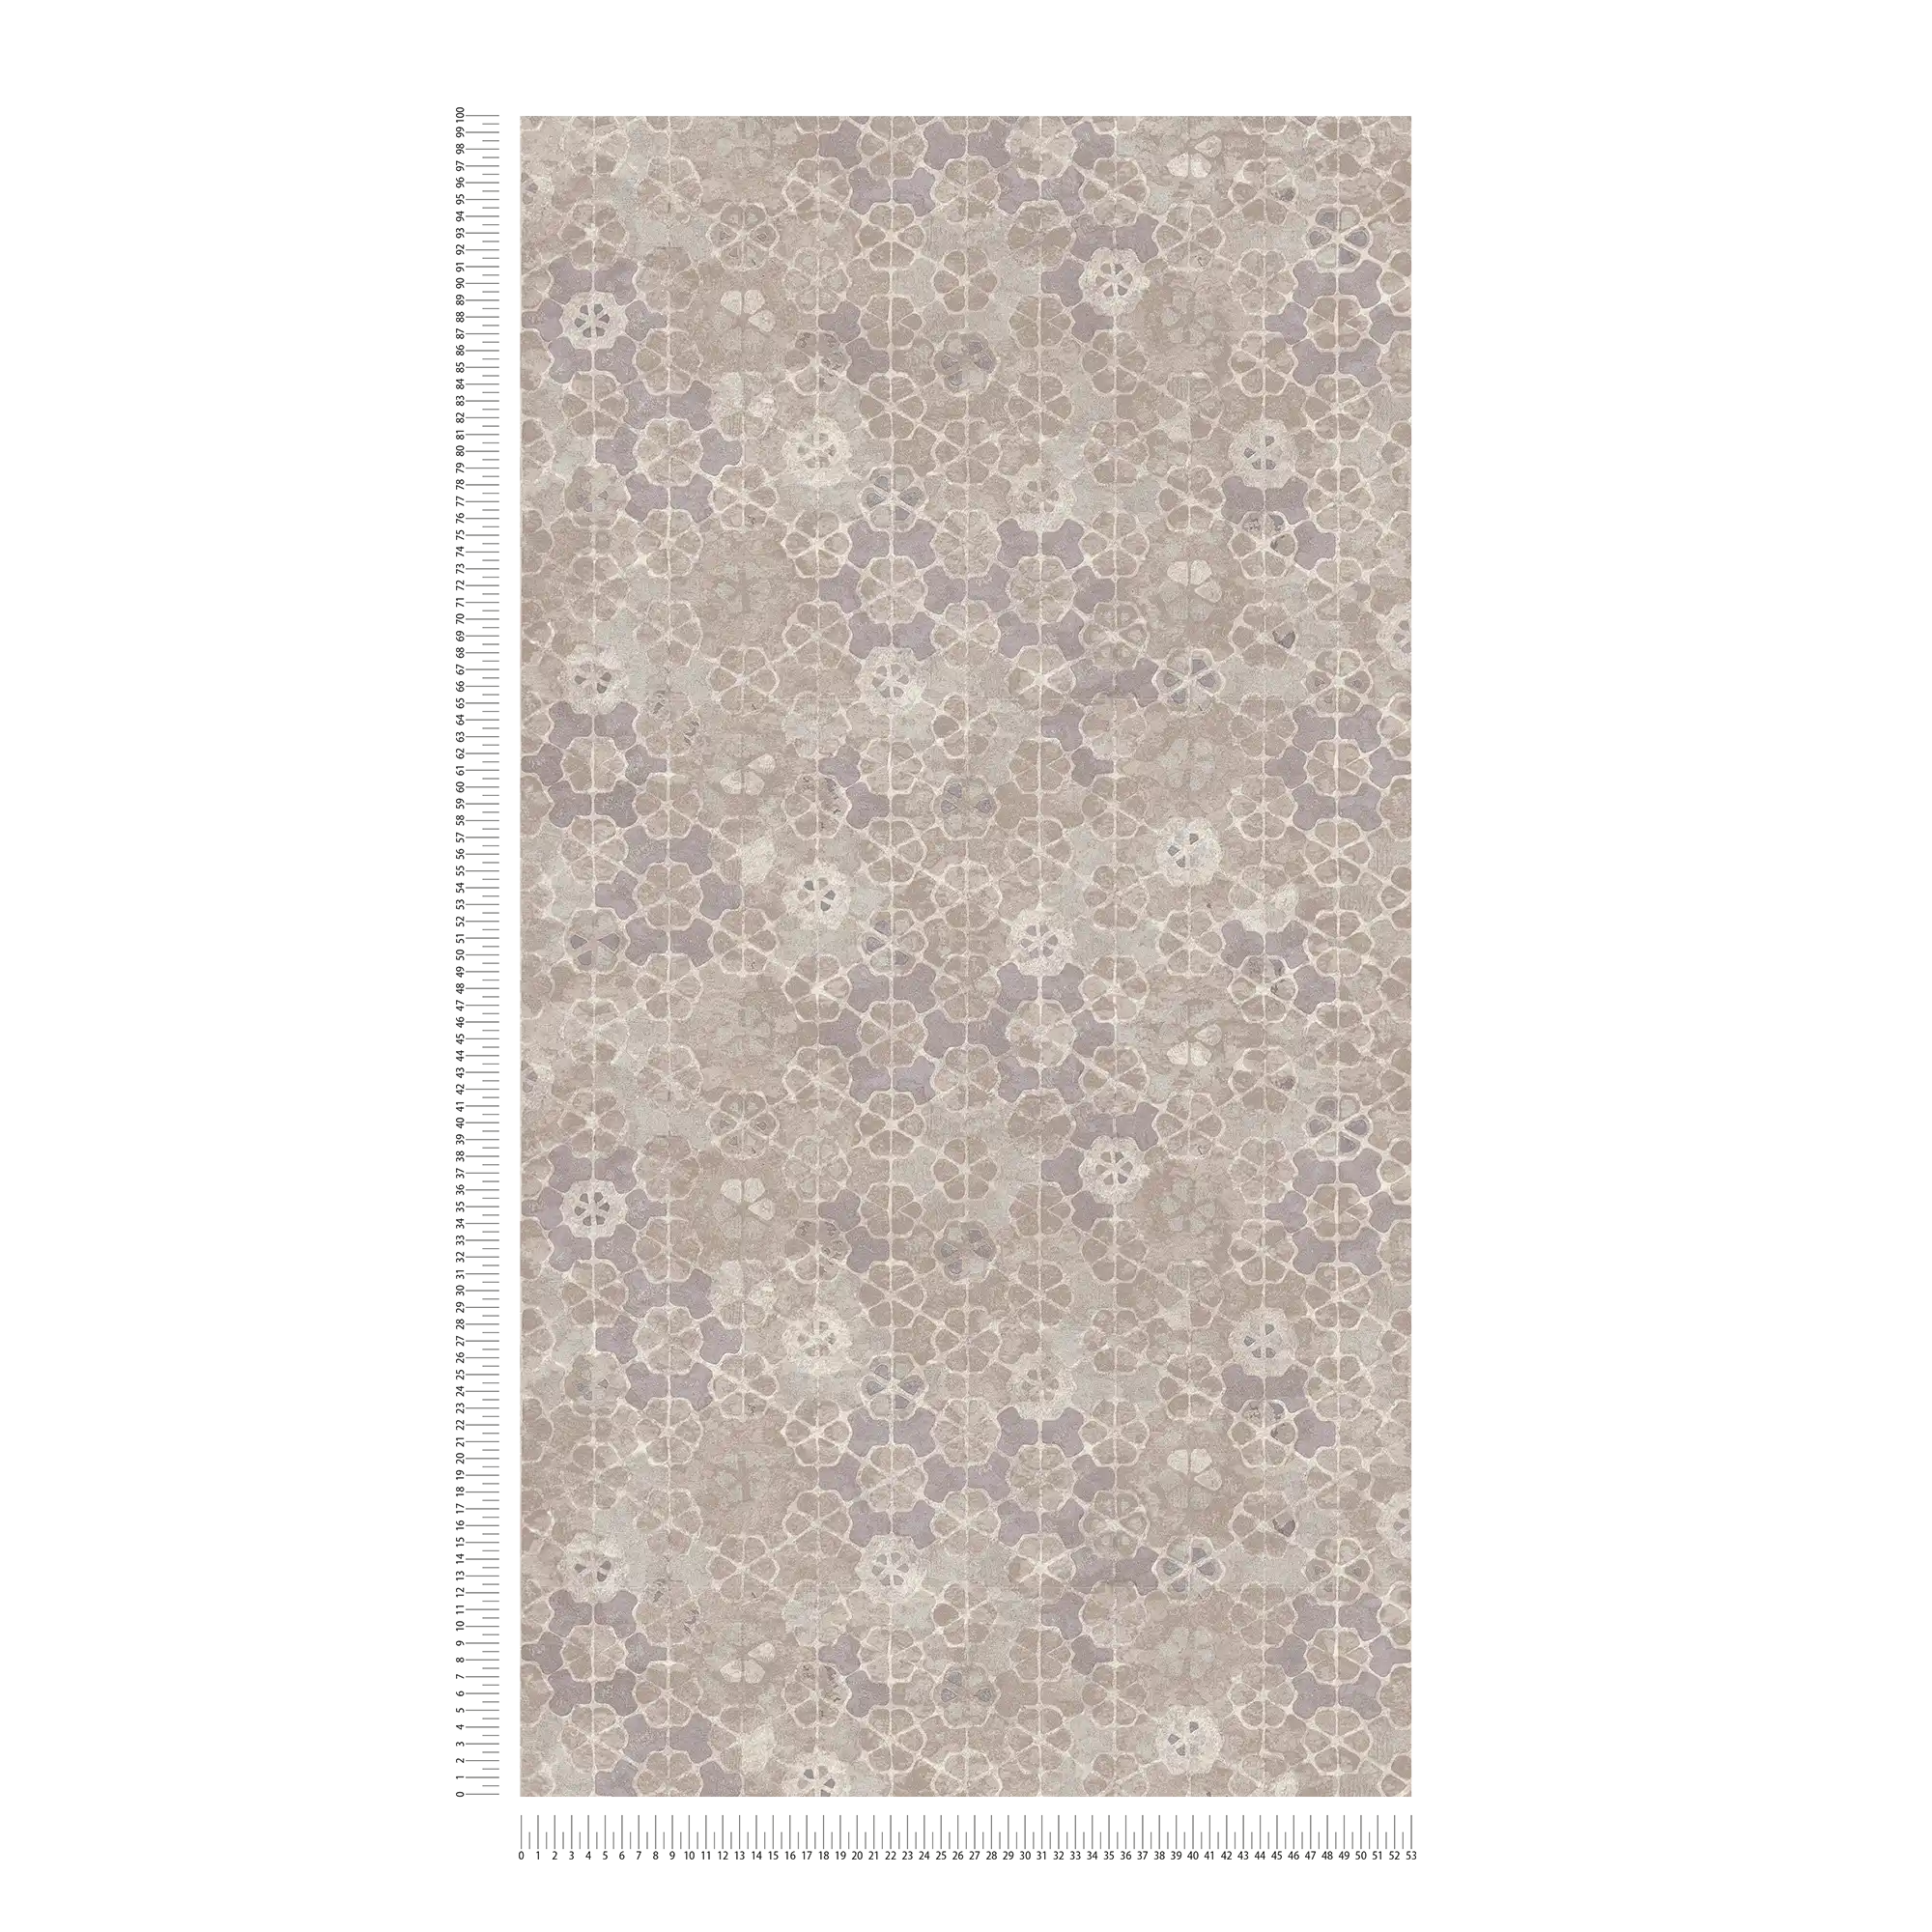             Carta da parati in tessuto non tessuto effetto piastrelle con riflessi argentati - grigio, bianco
        